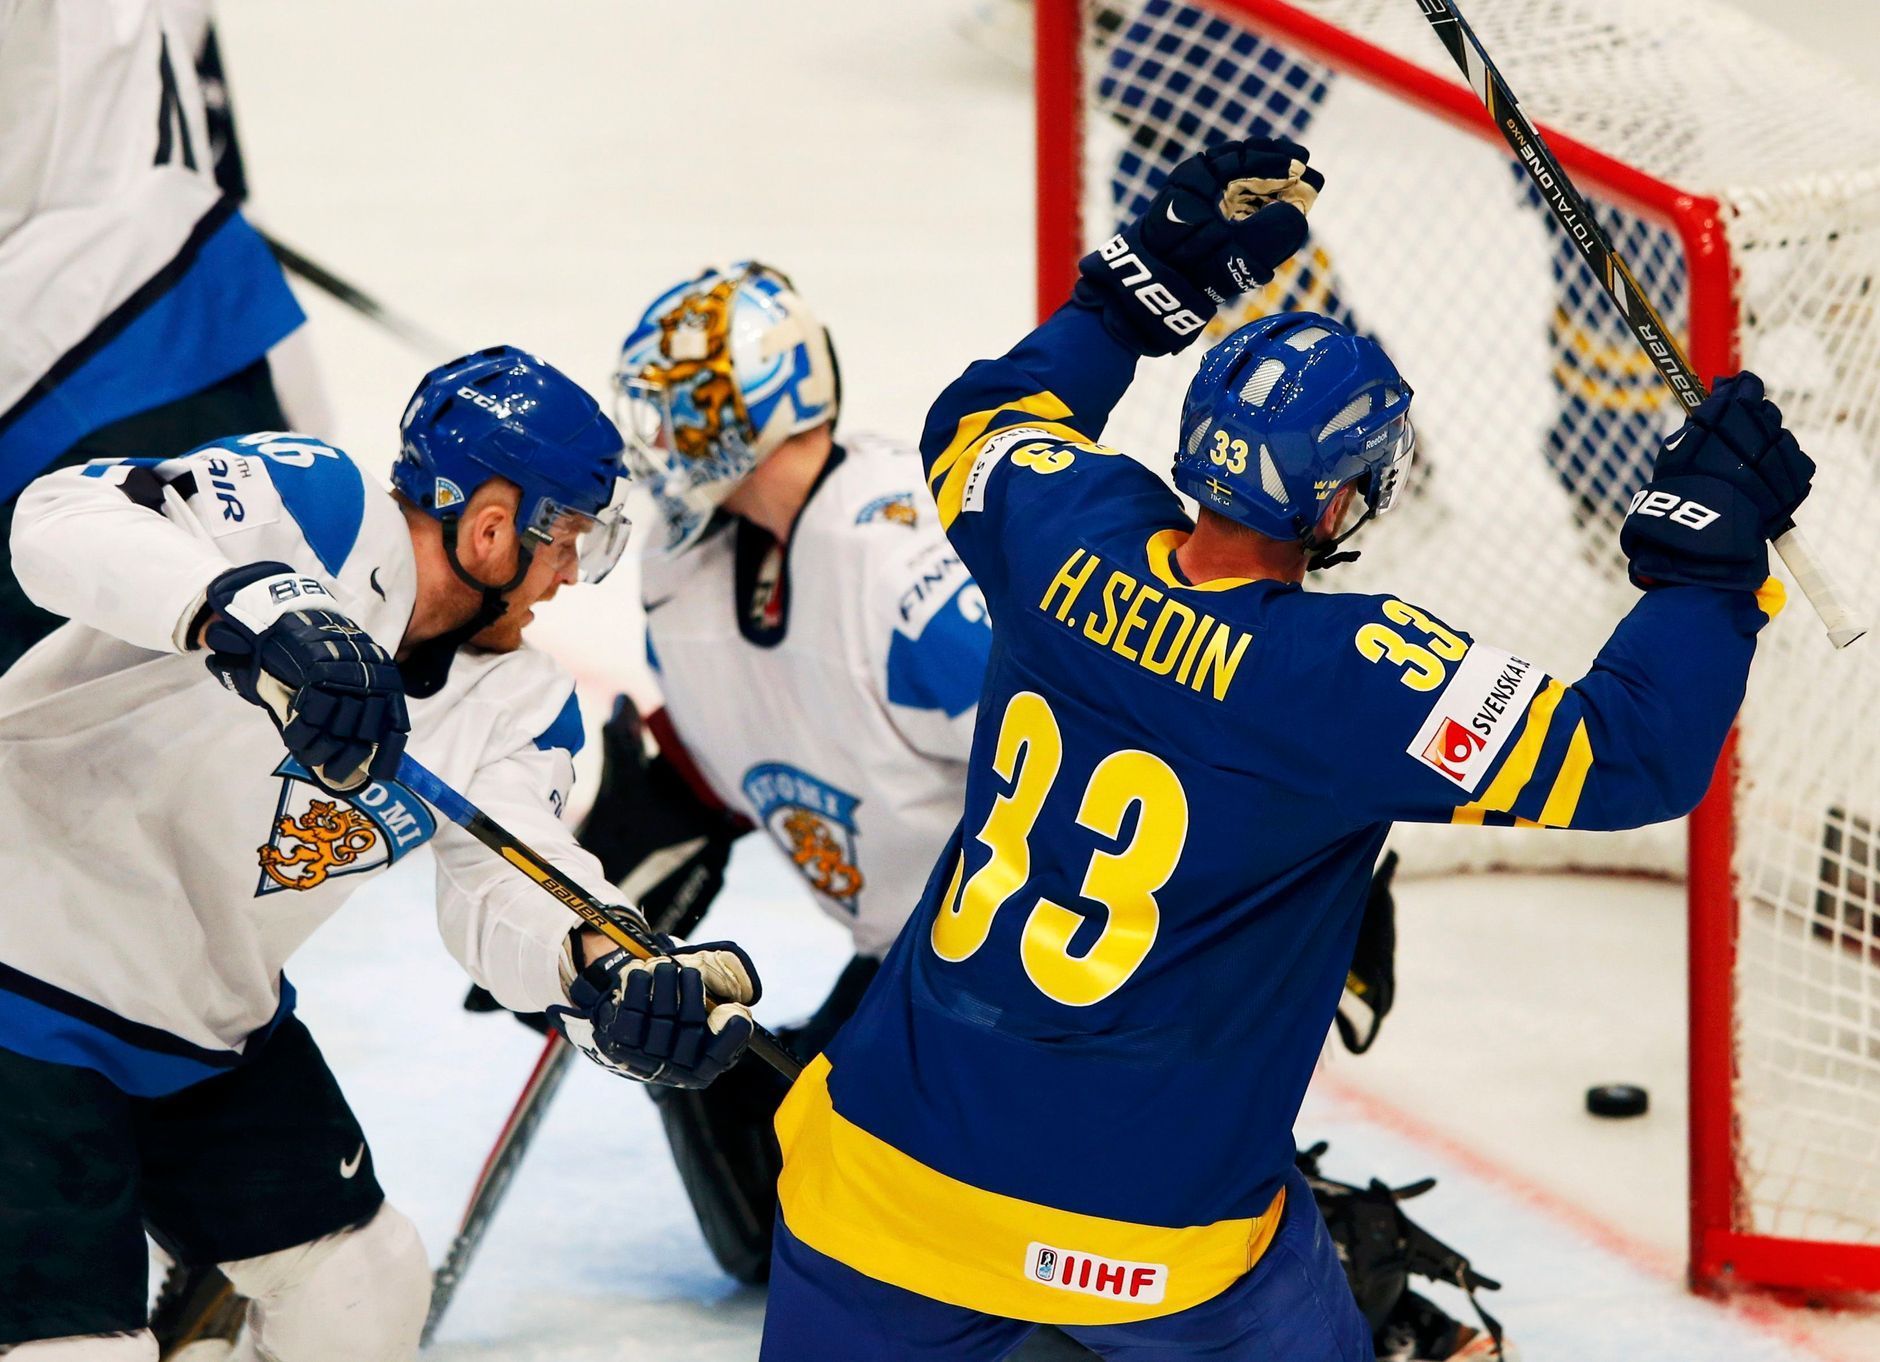 Hokej, MS 2013, Švédsko - Finsko: Henrik Sedin slaví švédský gól na 1:0